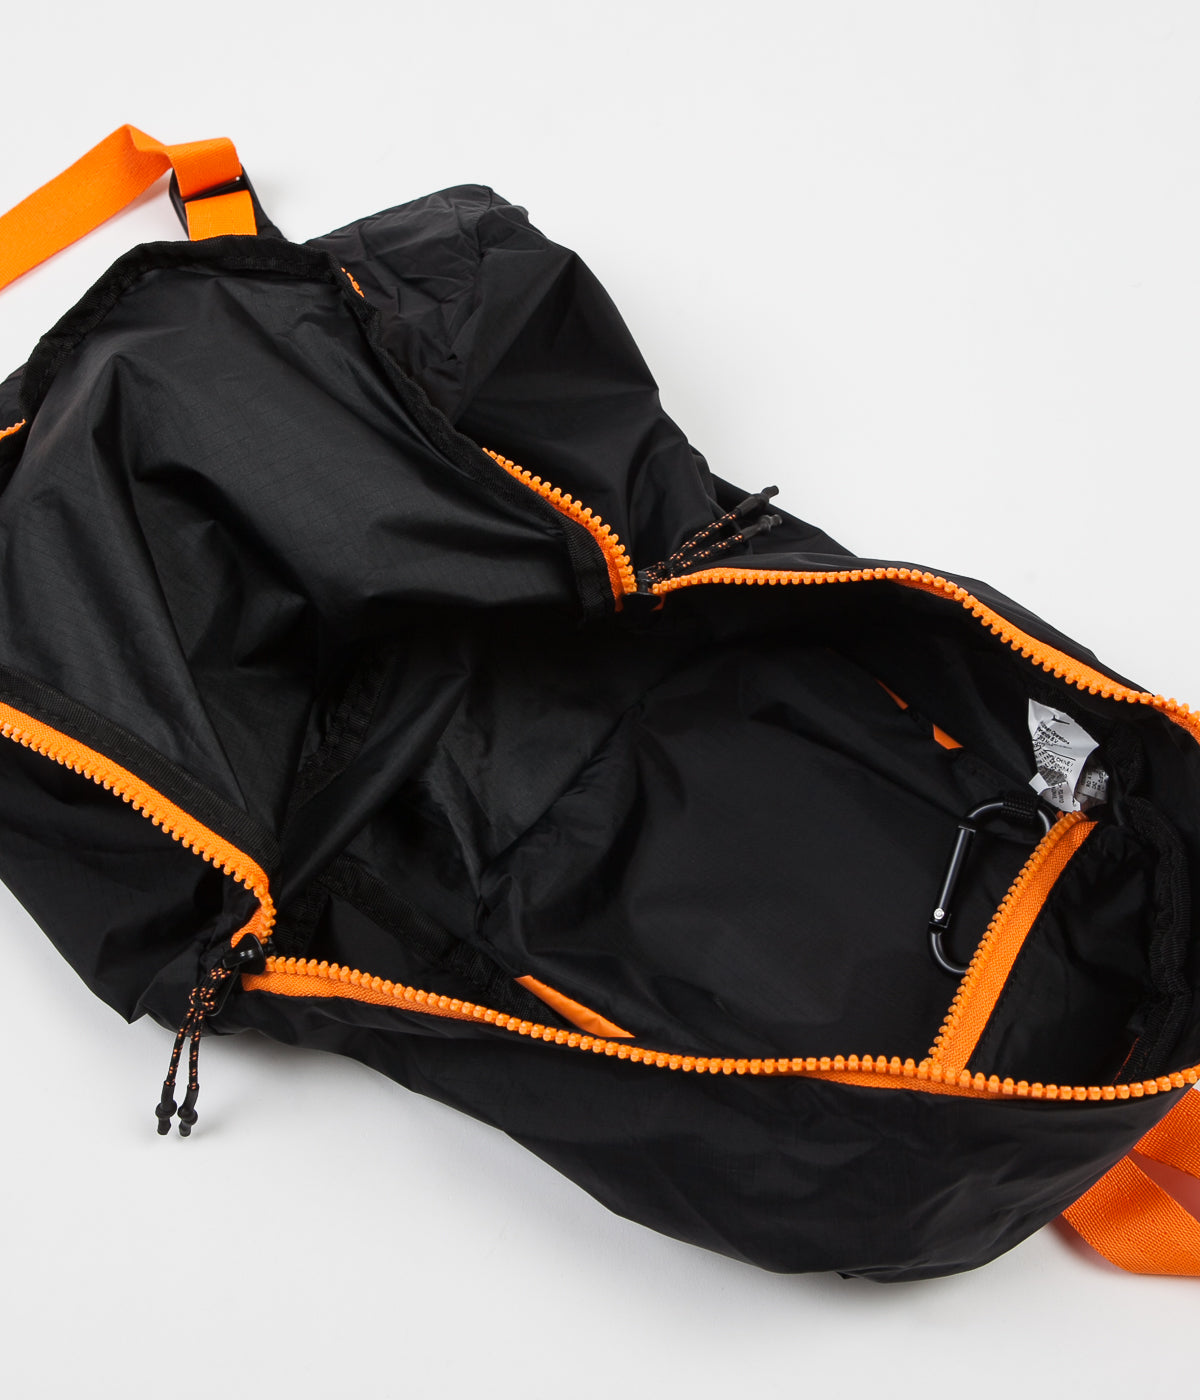 bright orange nike backpack